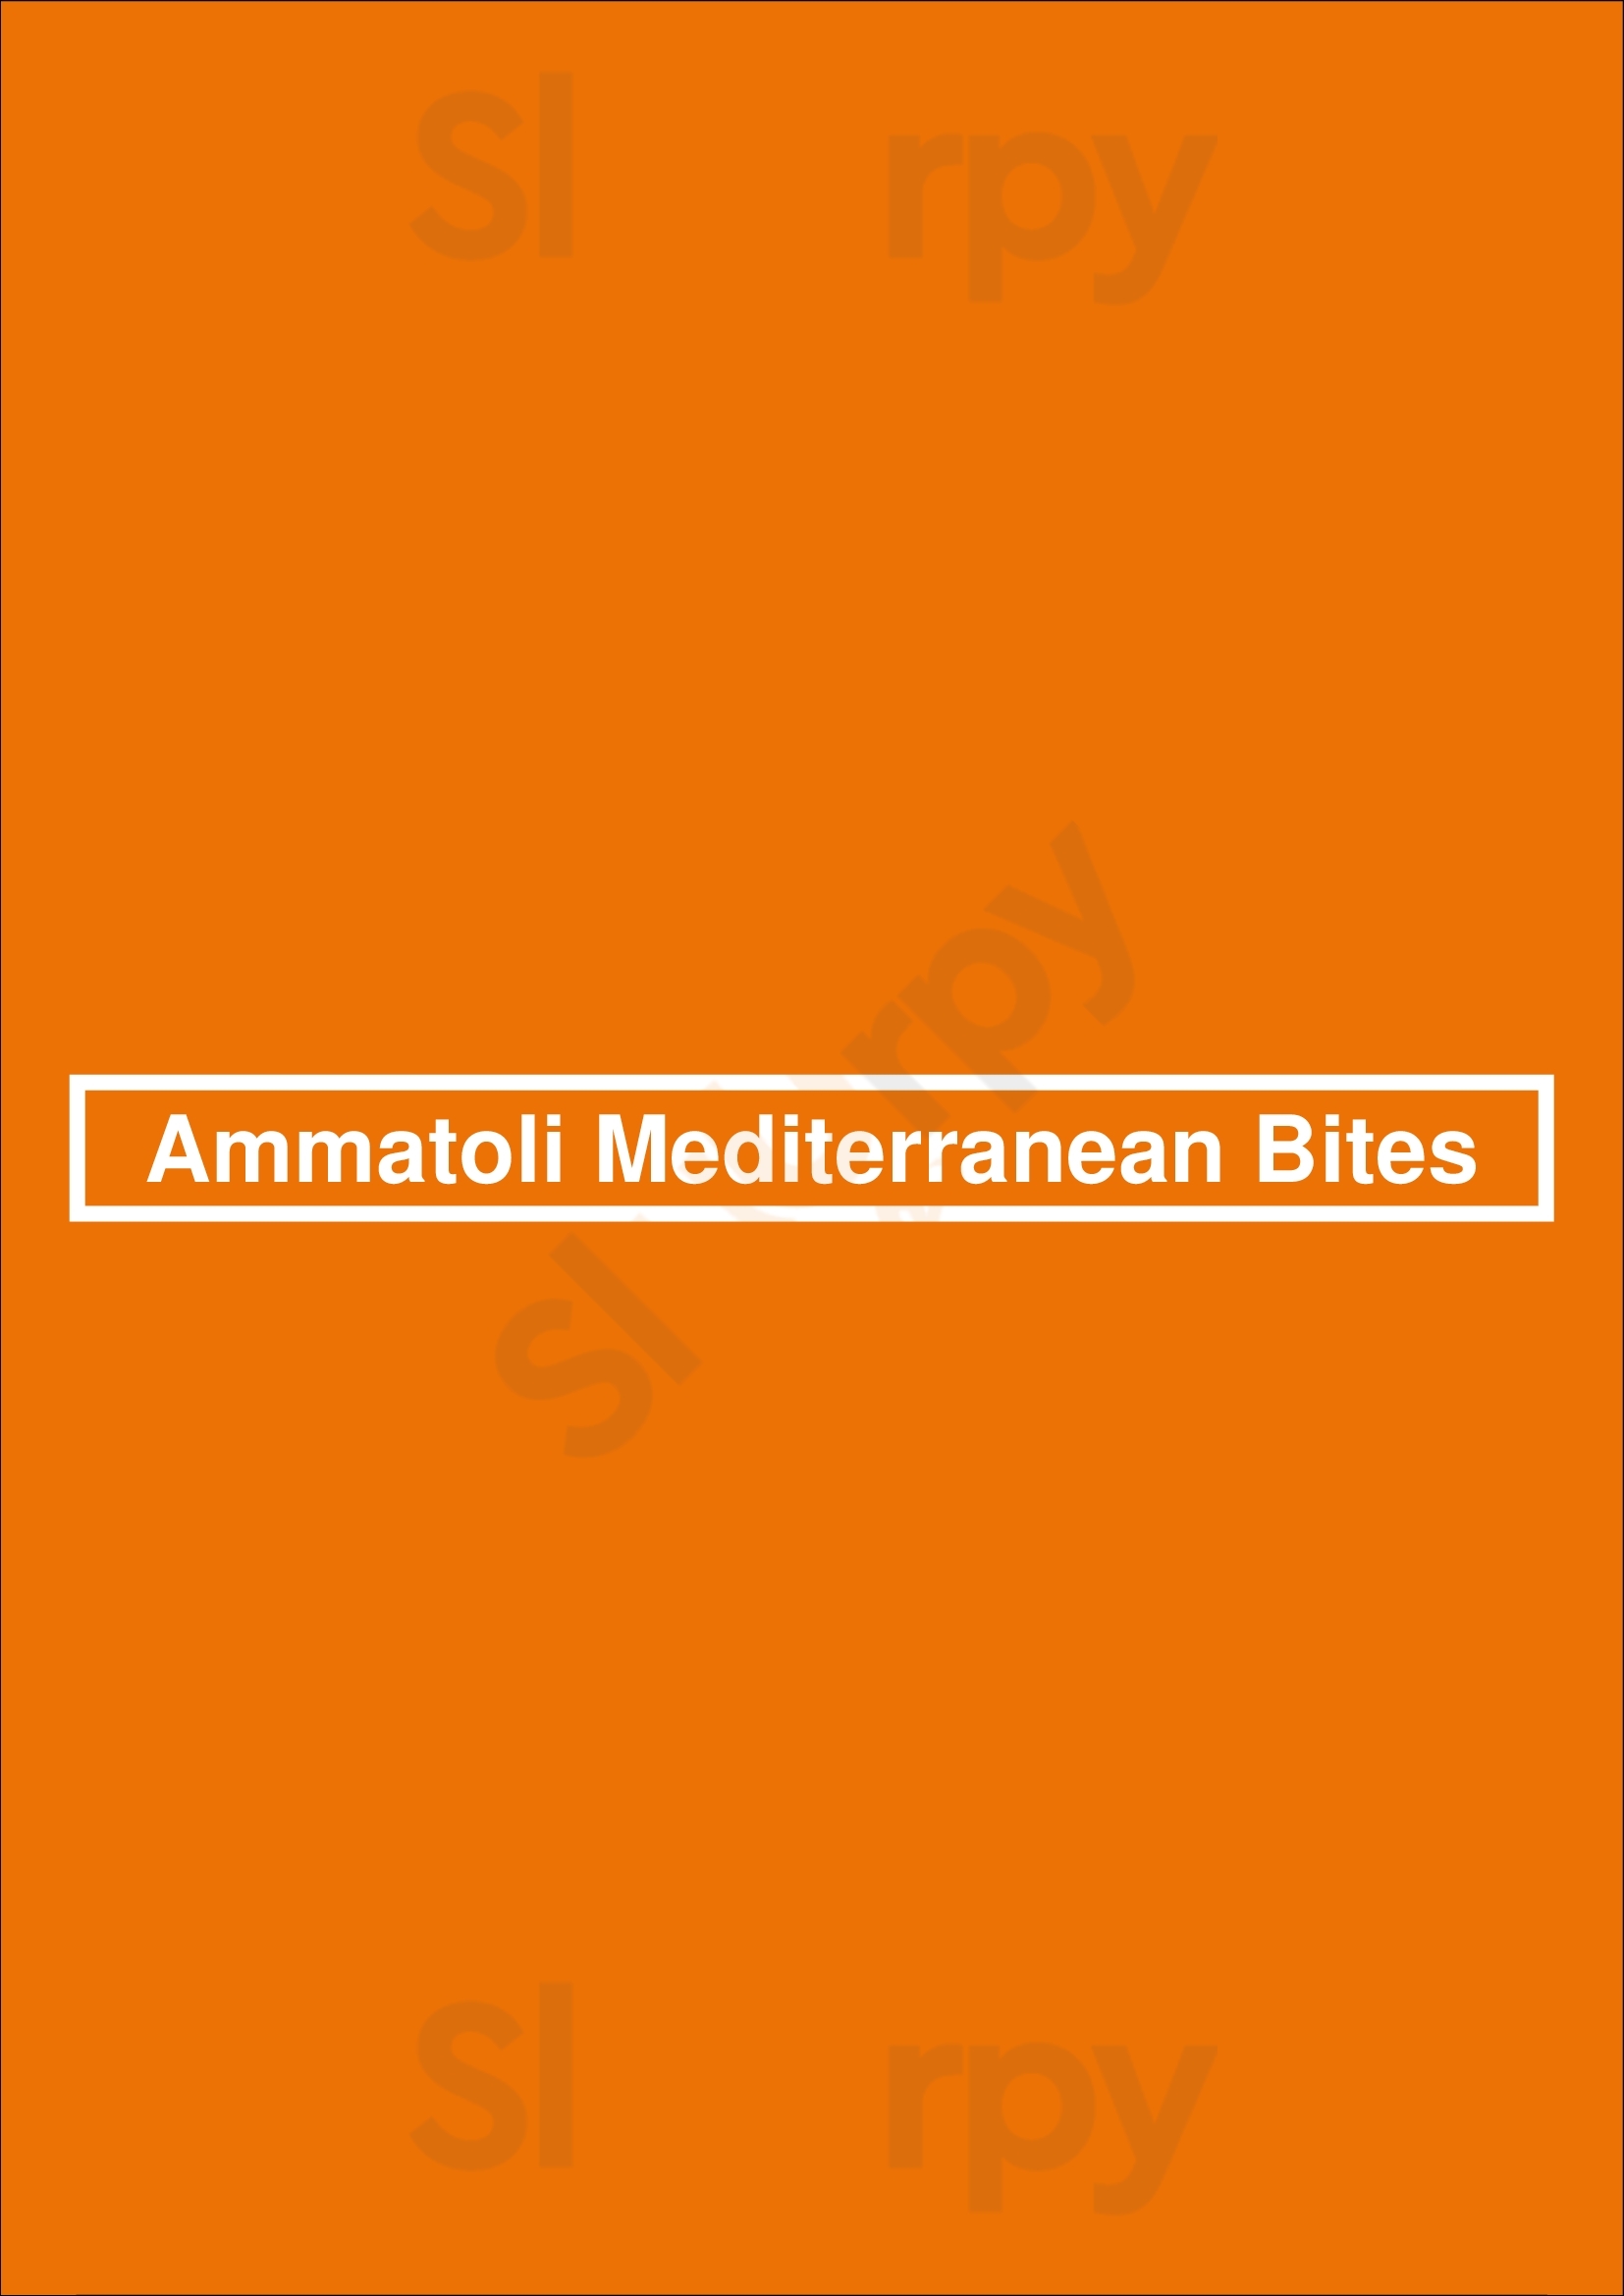 Ammatoli Mediterranean Bites Long Beach Menu - 1